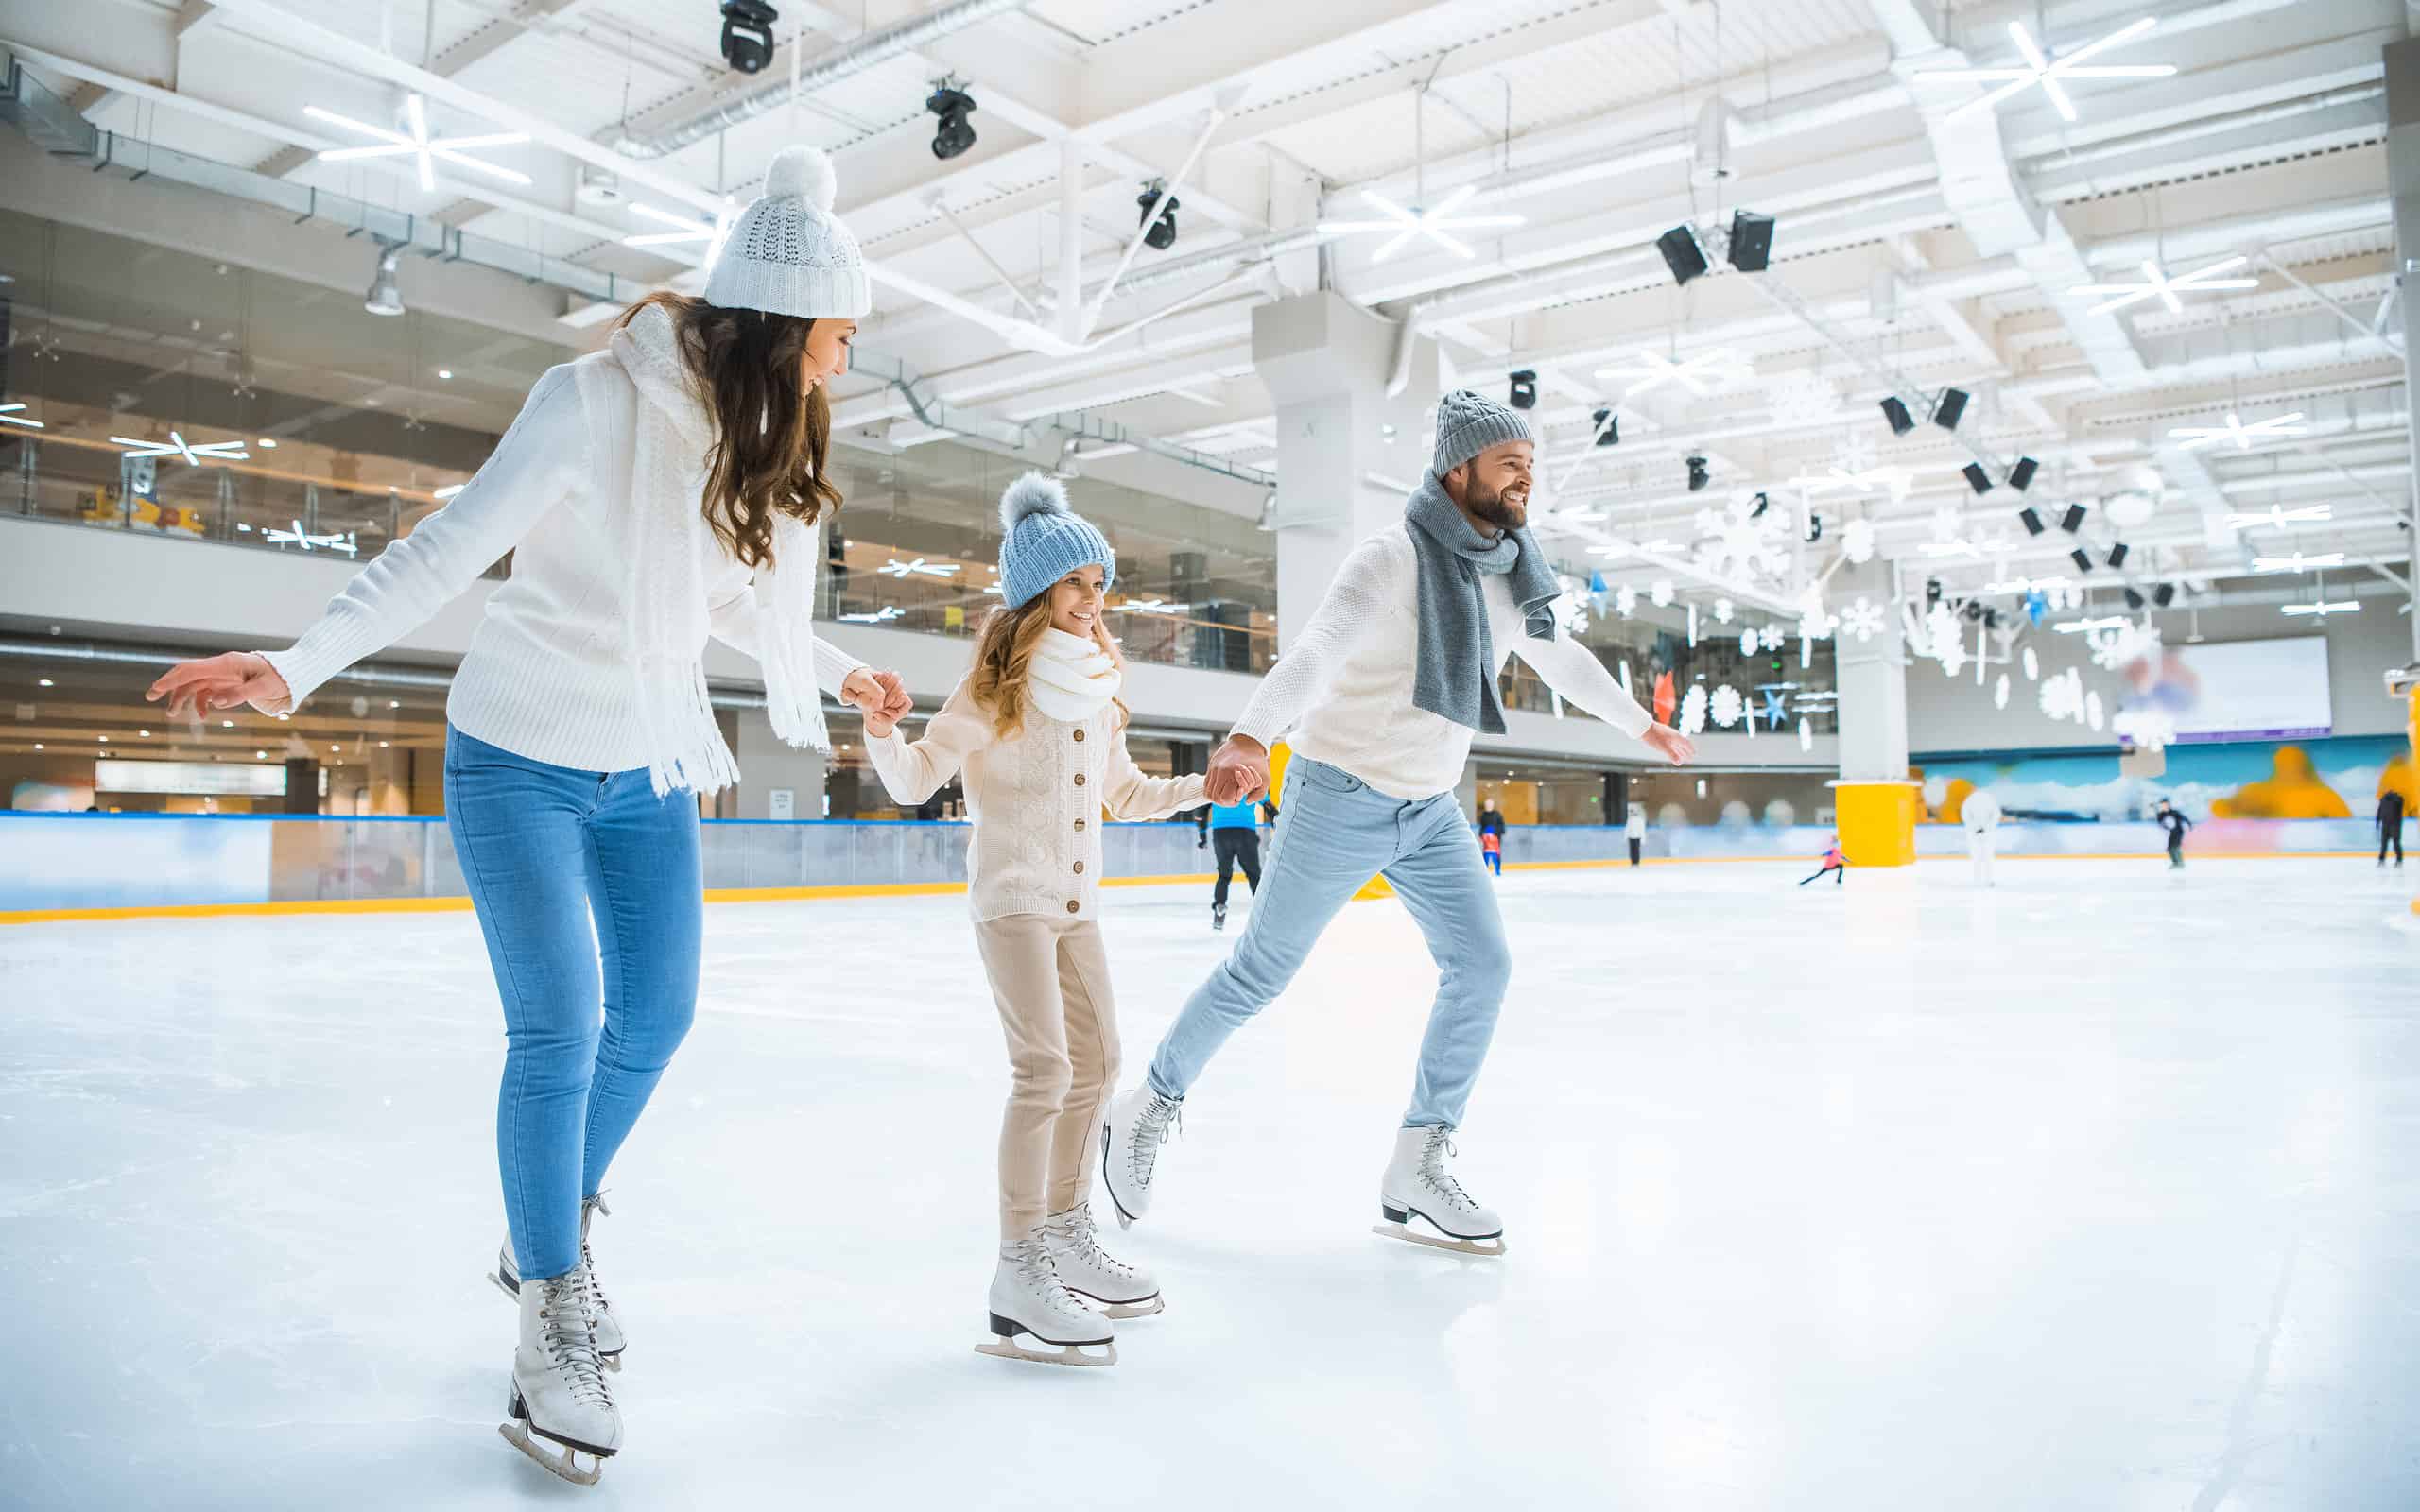 Pattinaggio sul ghiaccio, Famiglia, Pista di pattinaggio, Ambientazione interna, Pattinaggio